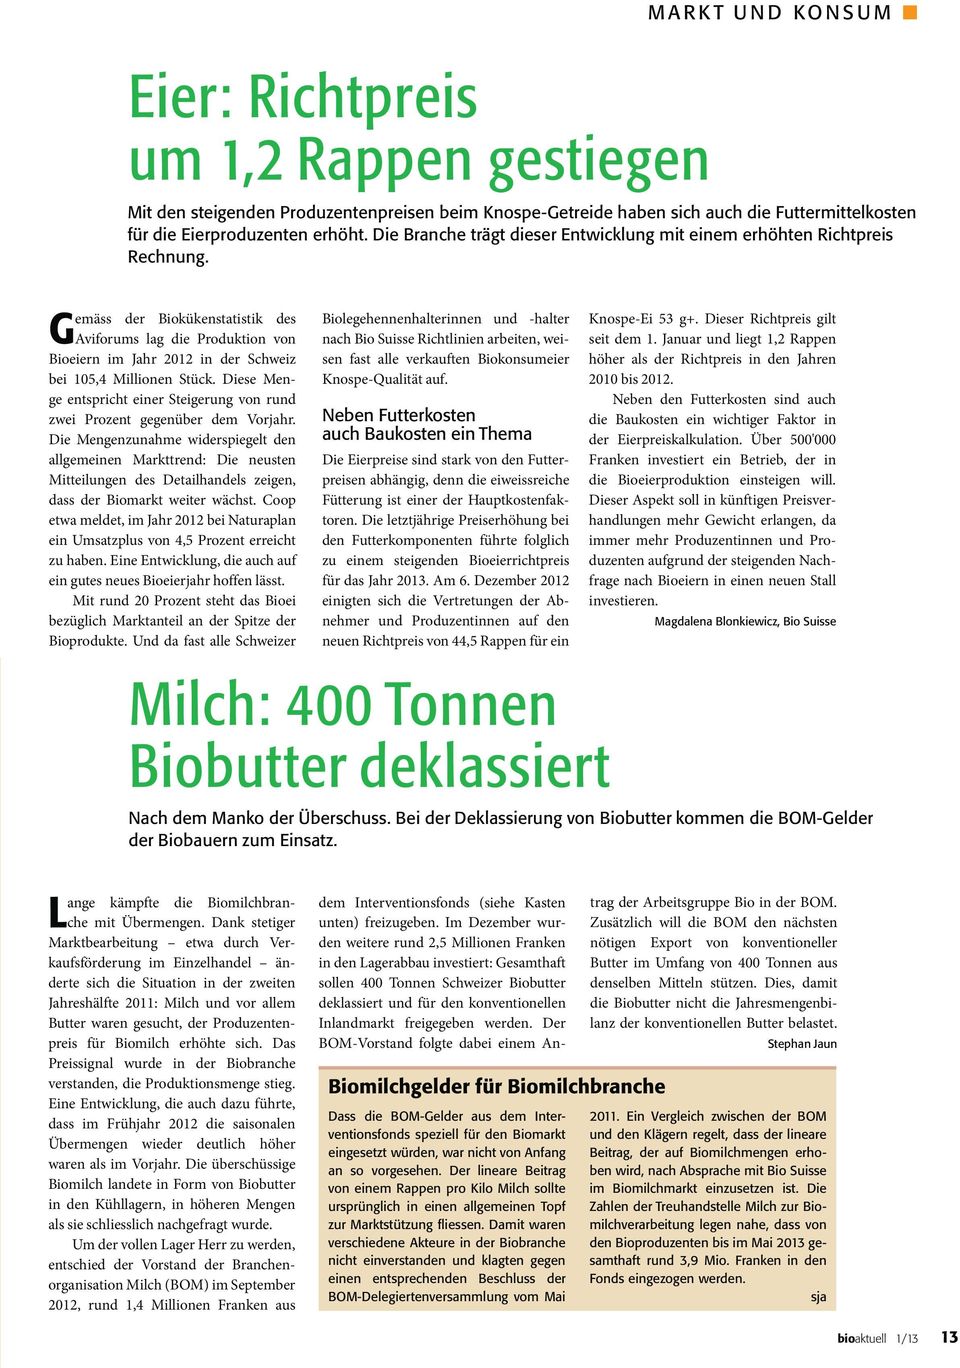 Gemäss der Biokükenstatistik des Aviforums lag die Produktion von Bioeiern im Jahr 2012 in der Schweiz bei 105,4 Millionen Stück.